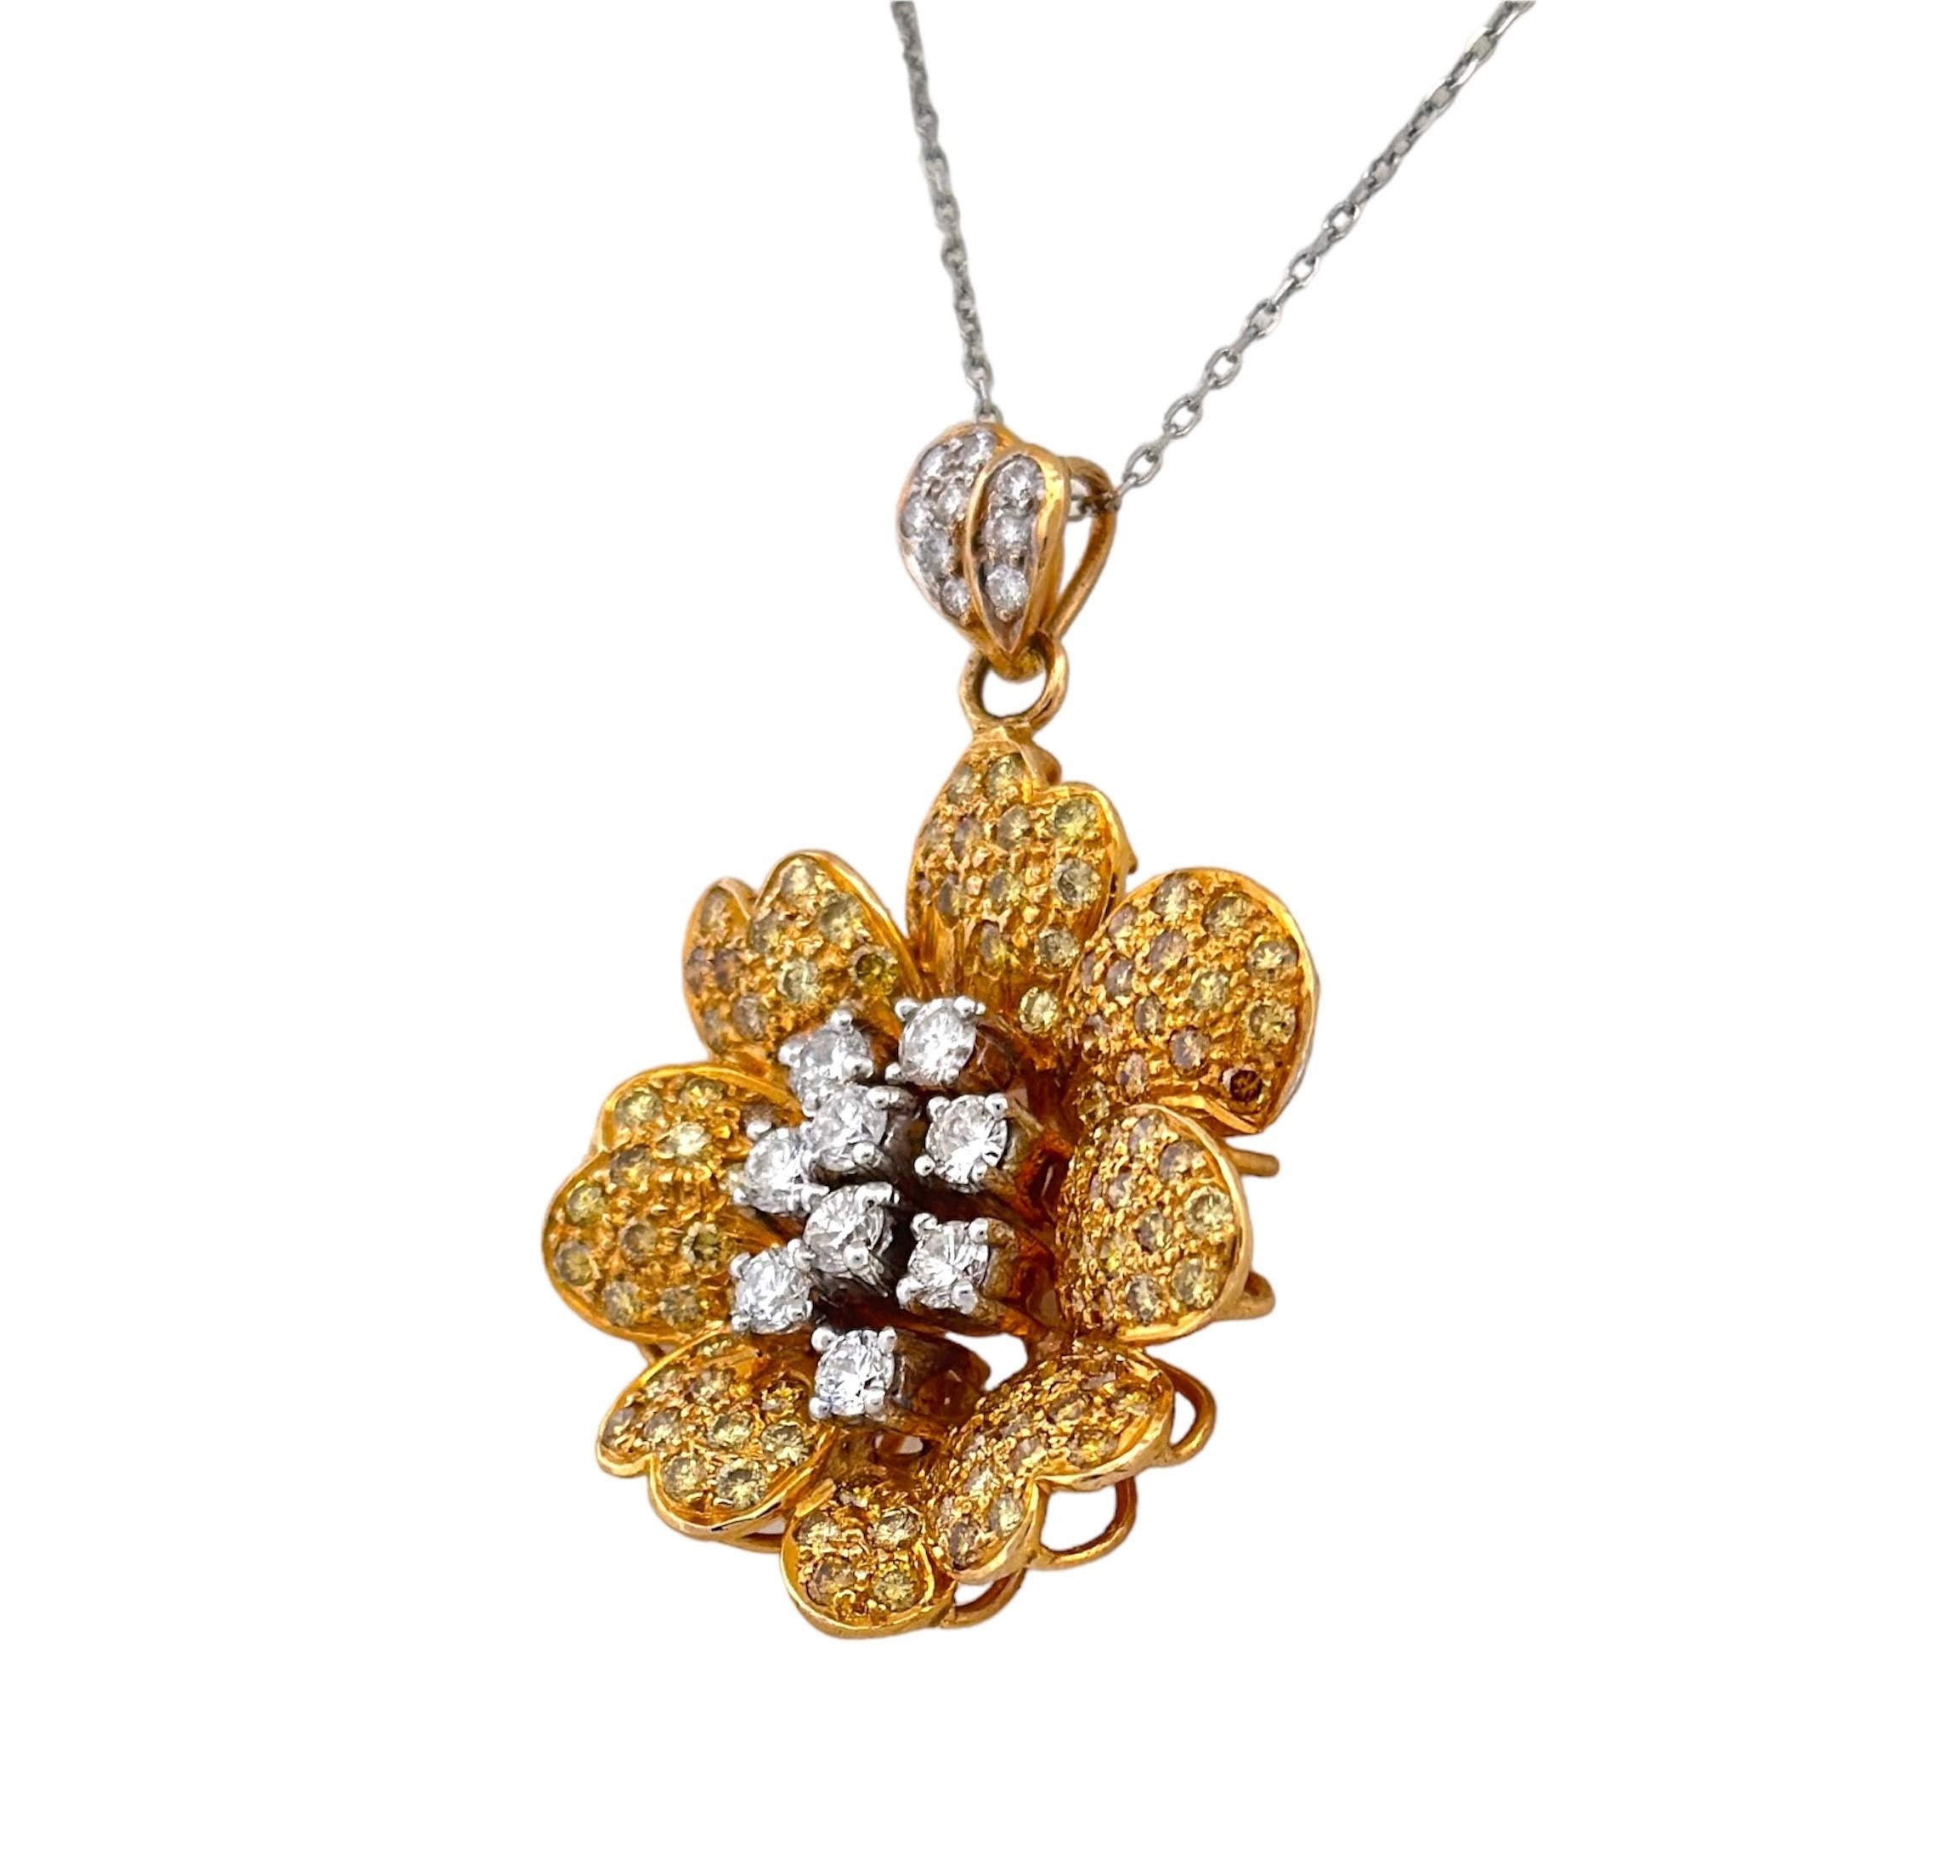 Remontez le temps jusqu'au XXe siècle et découvrez l'opulence de ce pendentif fleur en diamants jaunes et blancs. Le point focal est orné de diamants blancs immaculés, entourés d'un délicat halo de diamants jaunes vifs, résultant en un jeu visuel